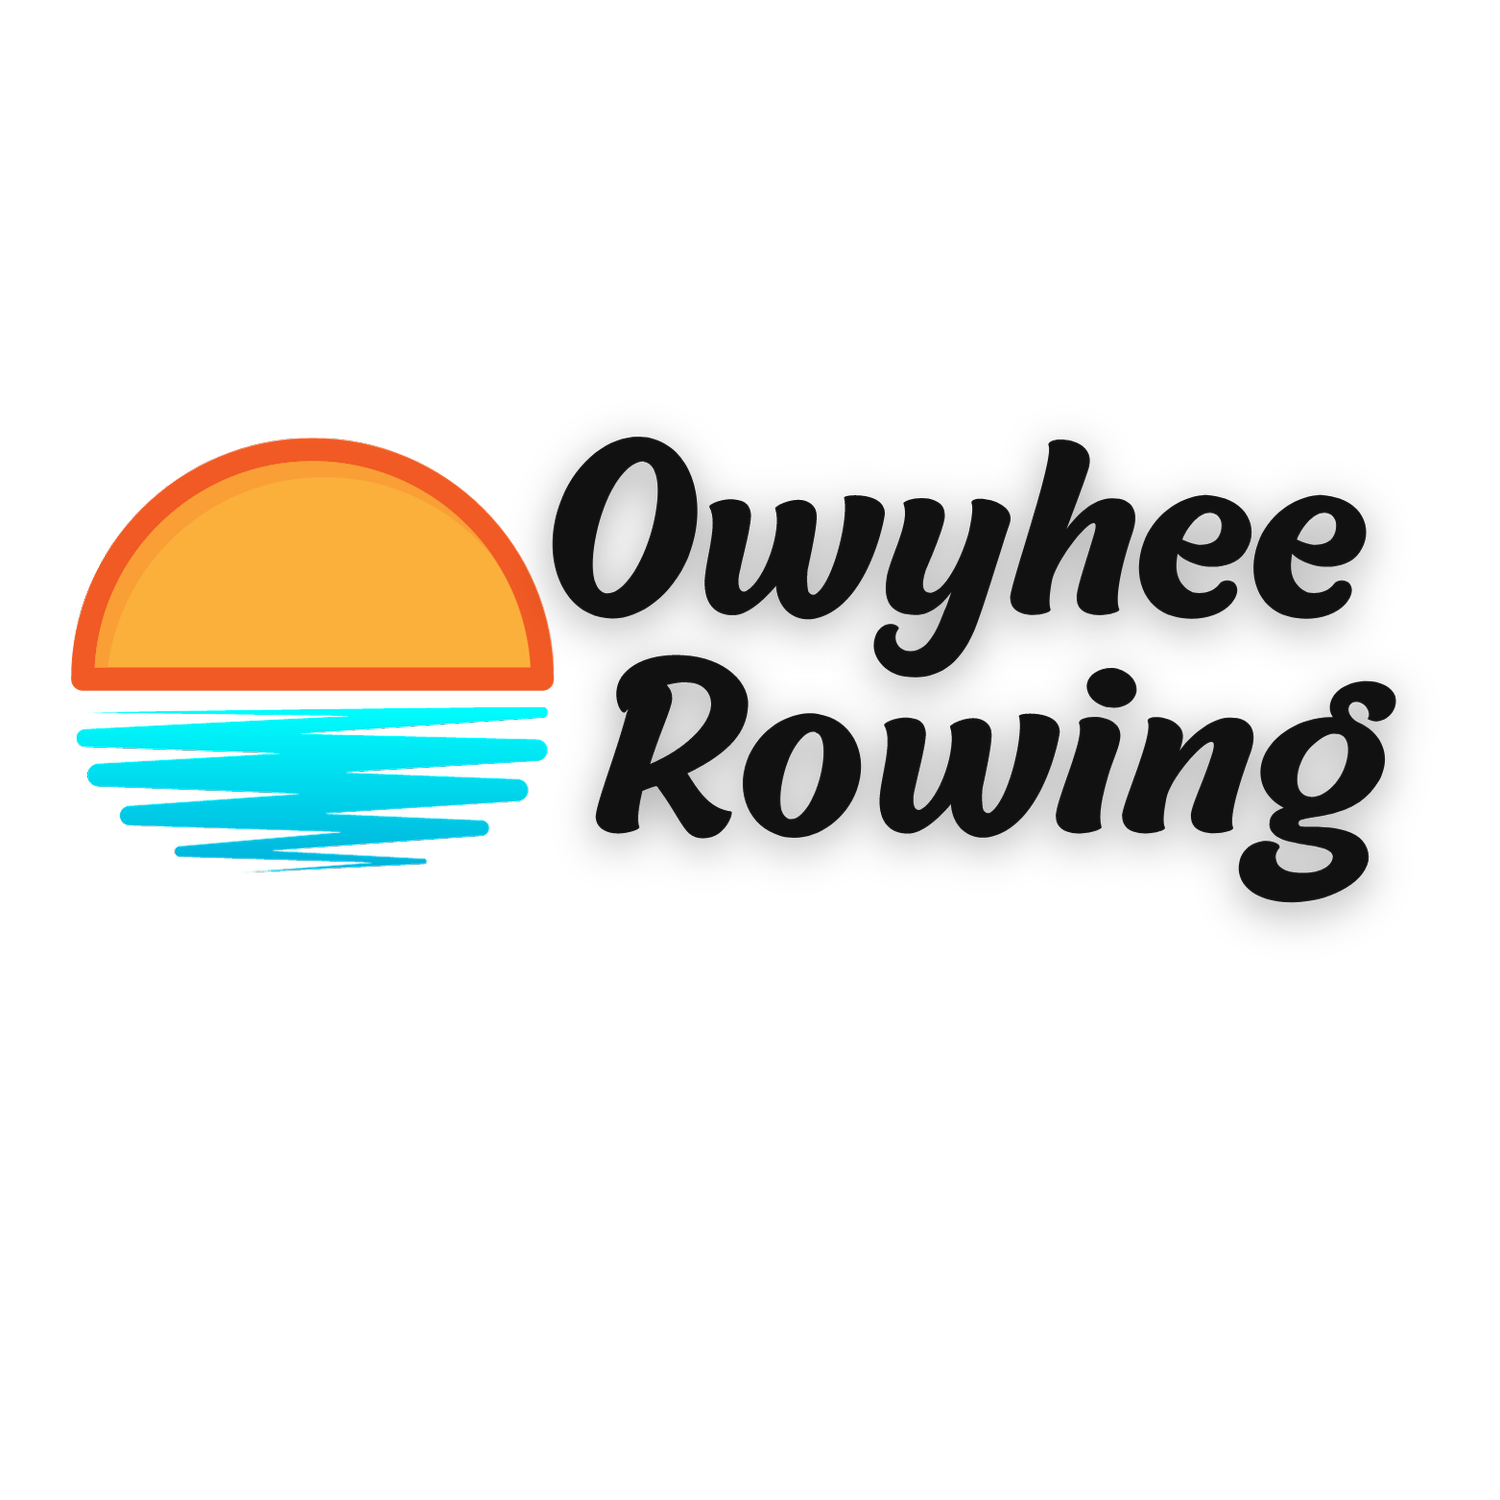 Owyhee Rowing